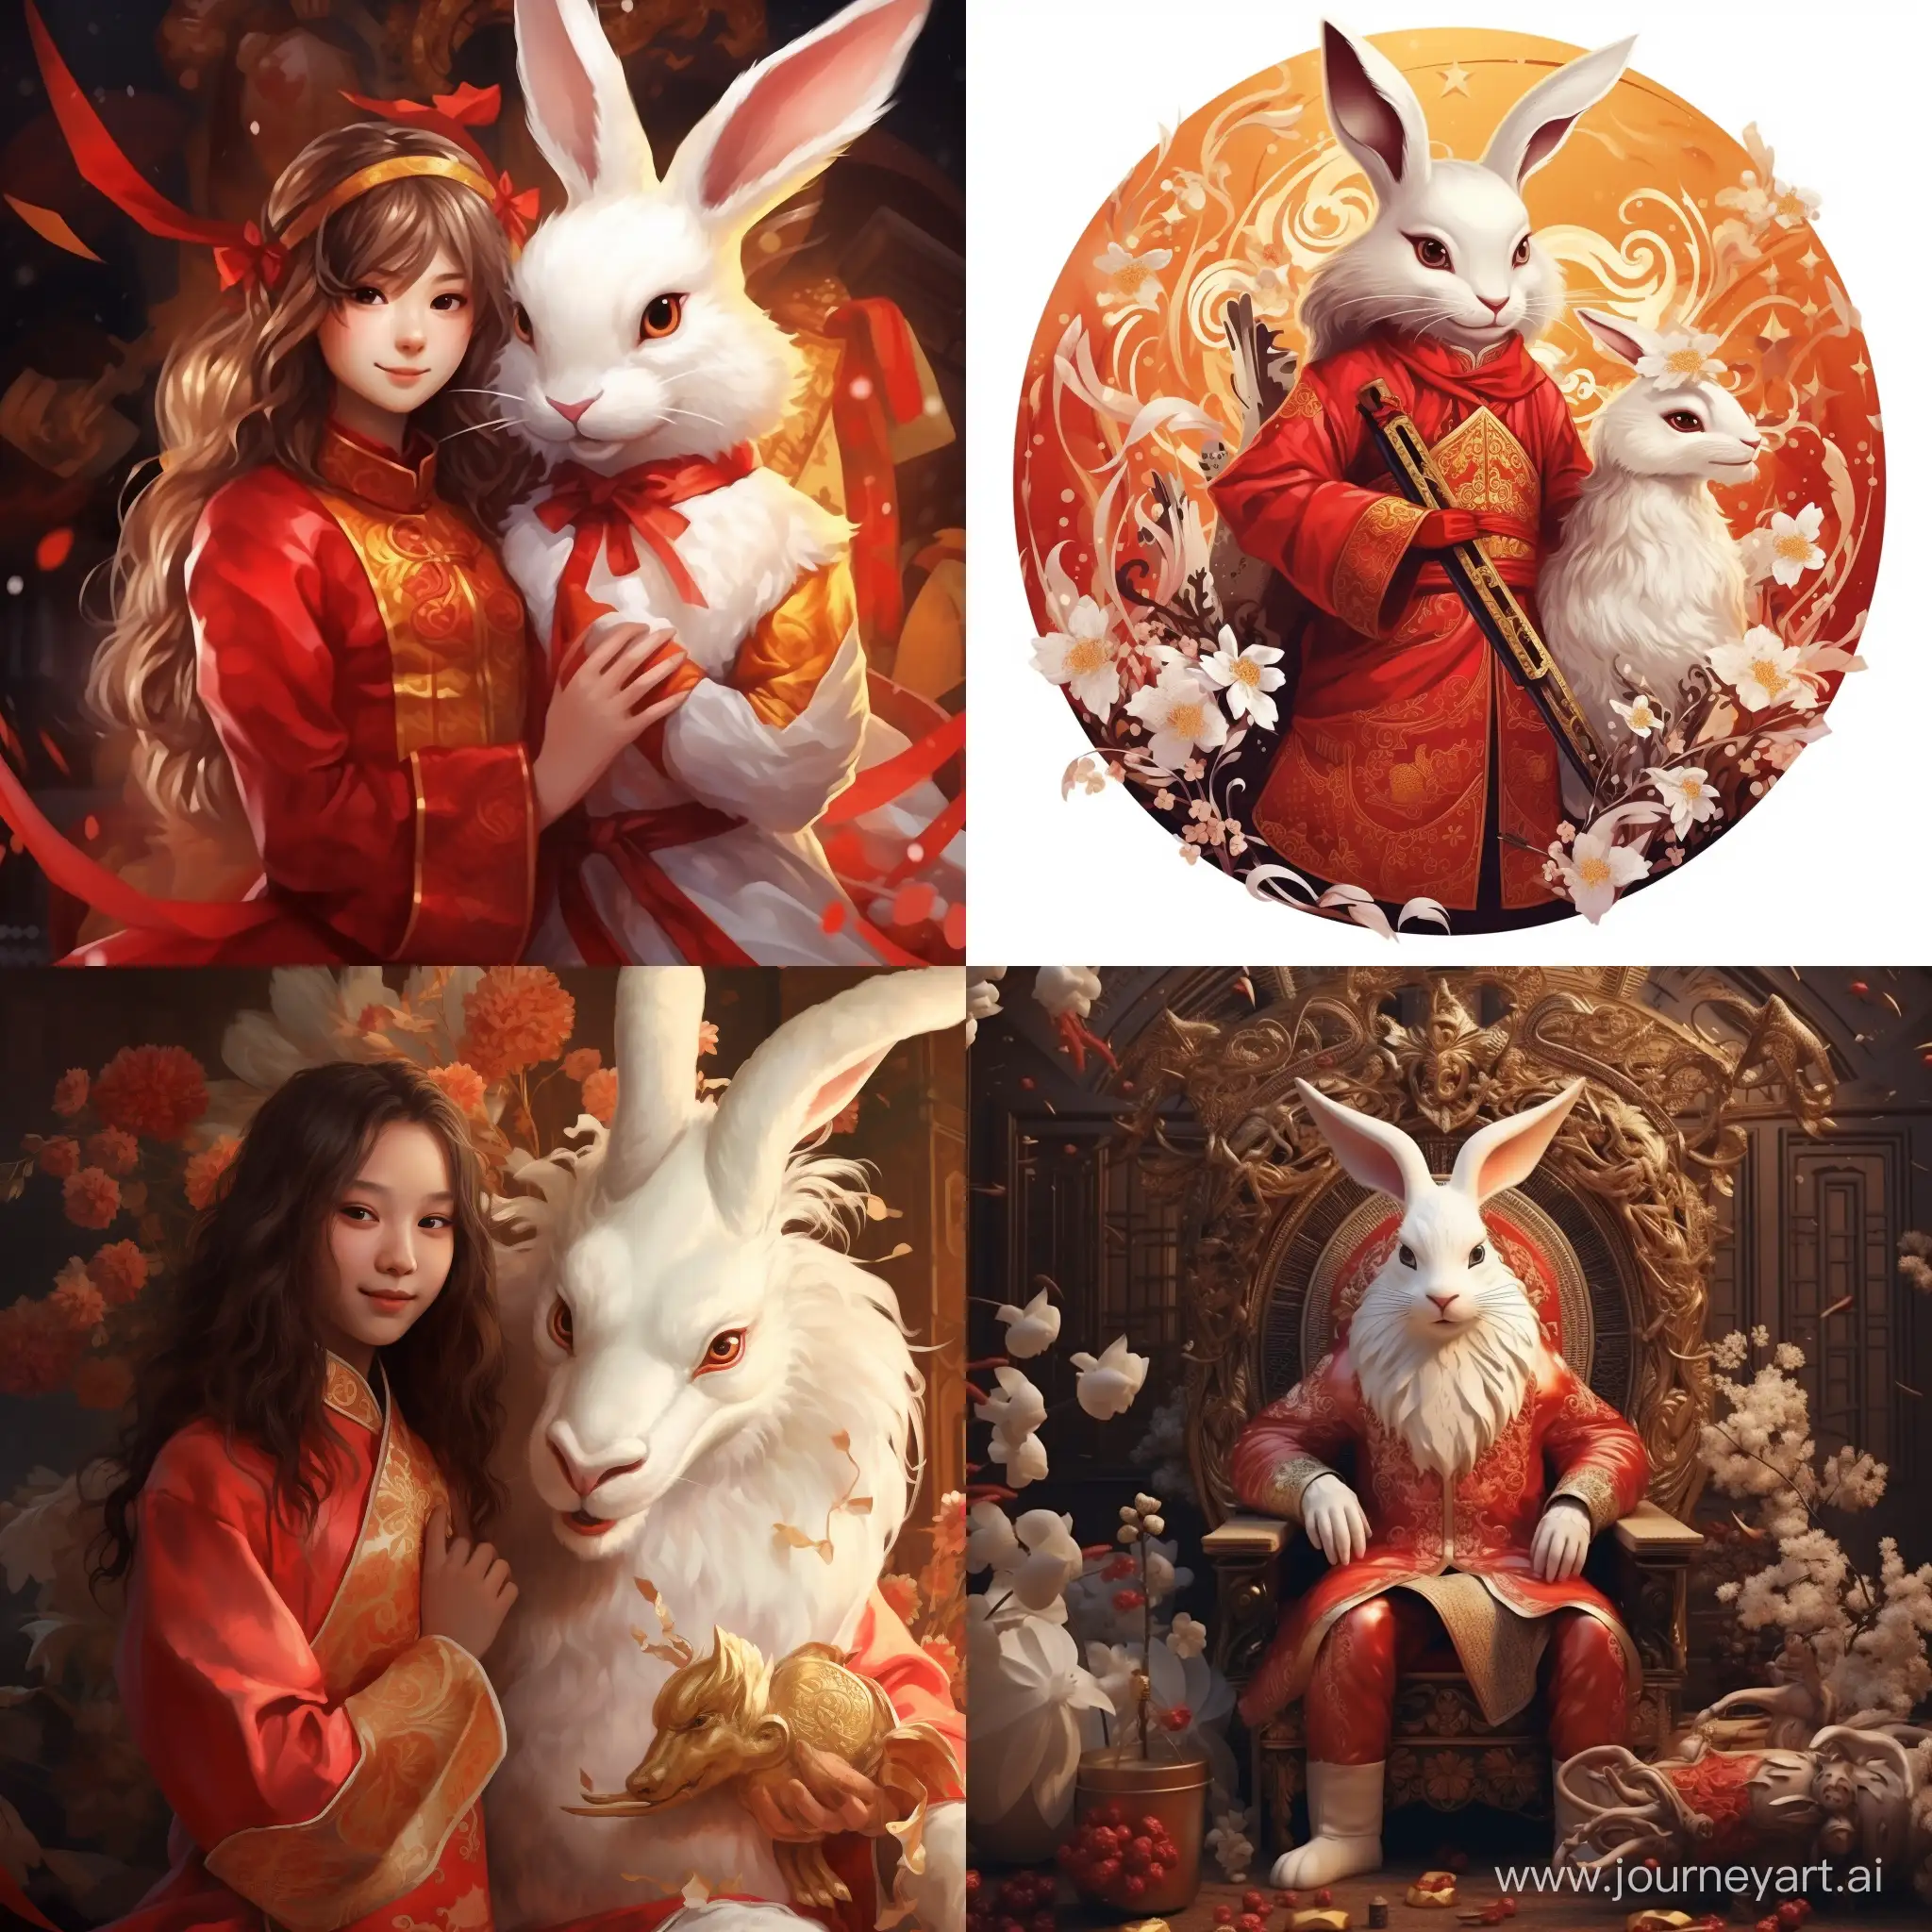 Золотой дракон в красном сюртуке обнимет белого зайца, новогодняя атмосфера